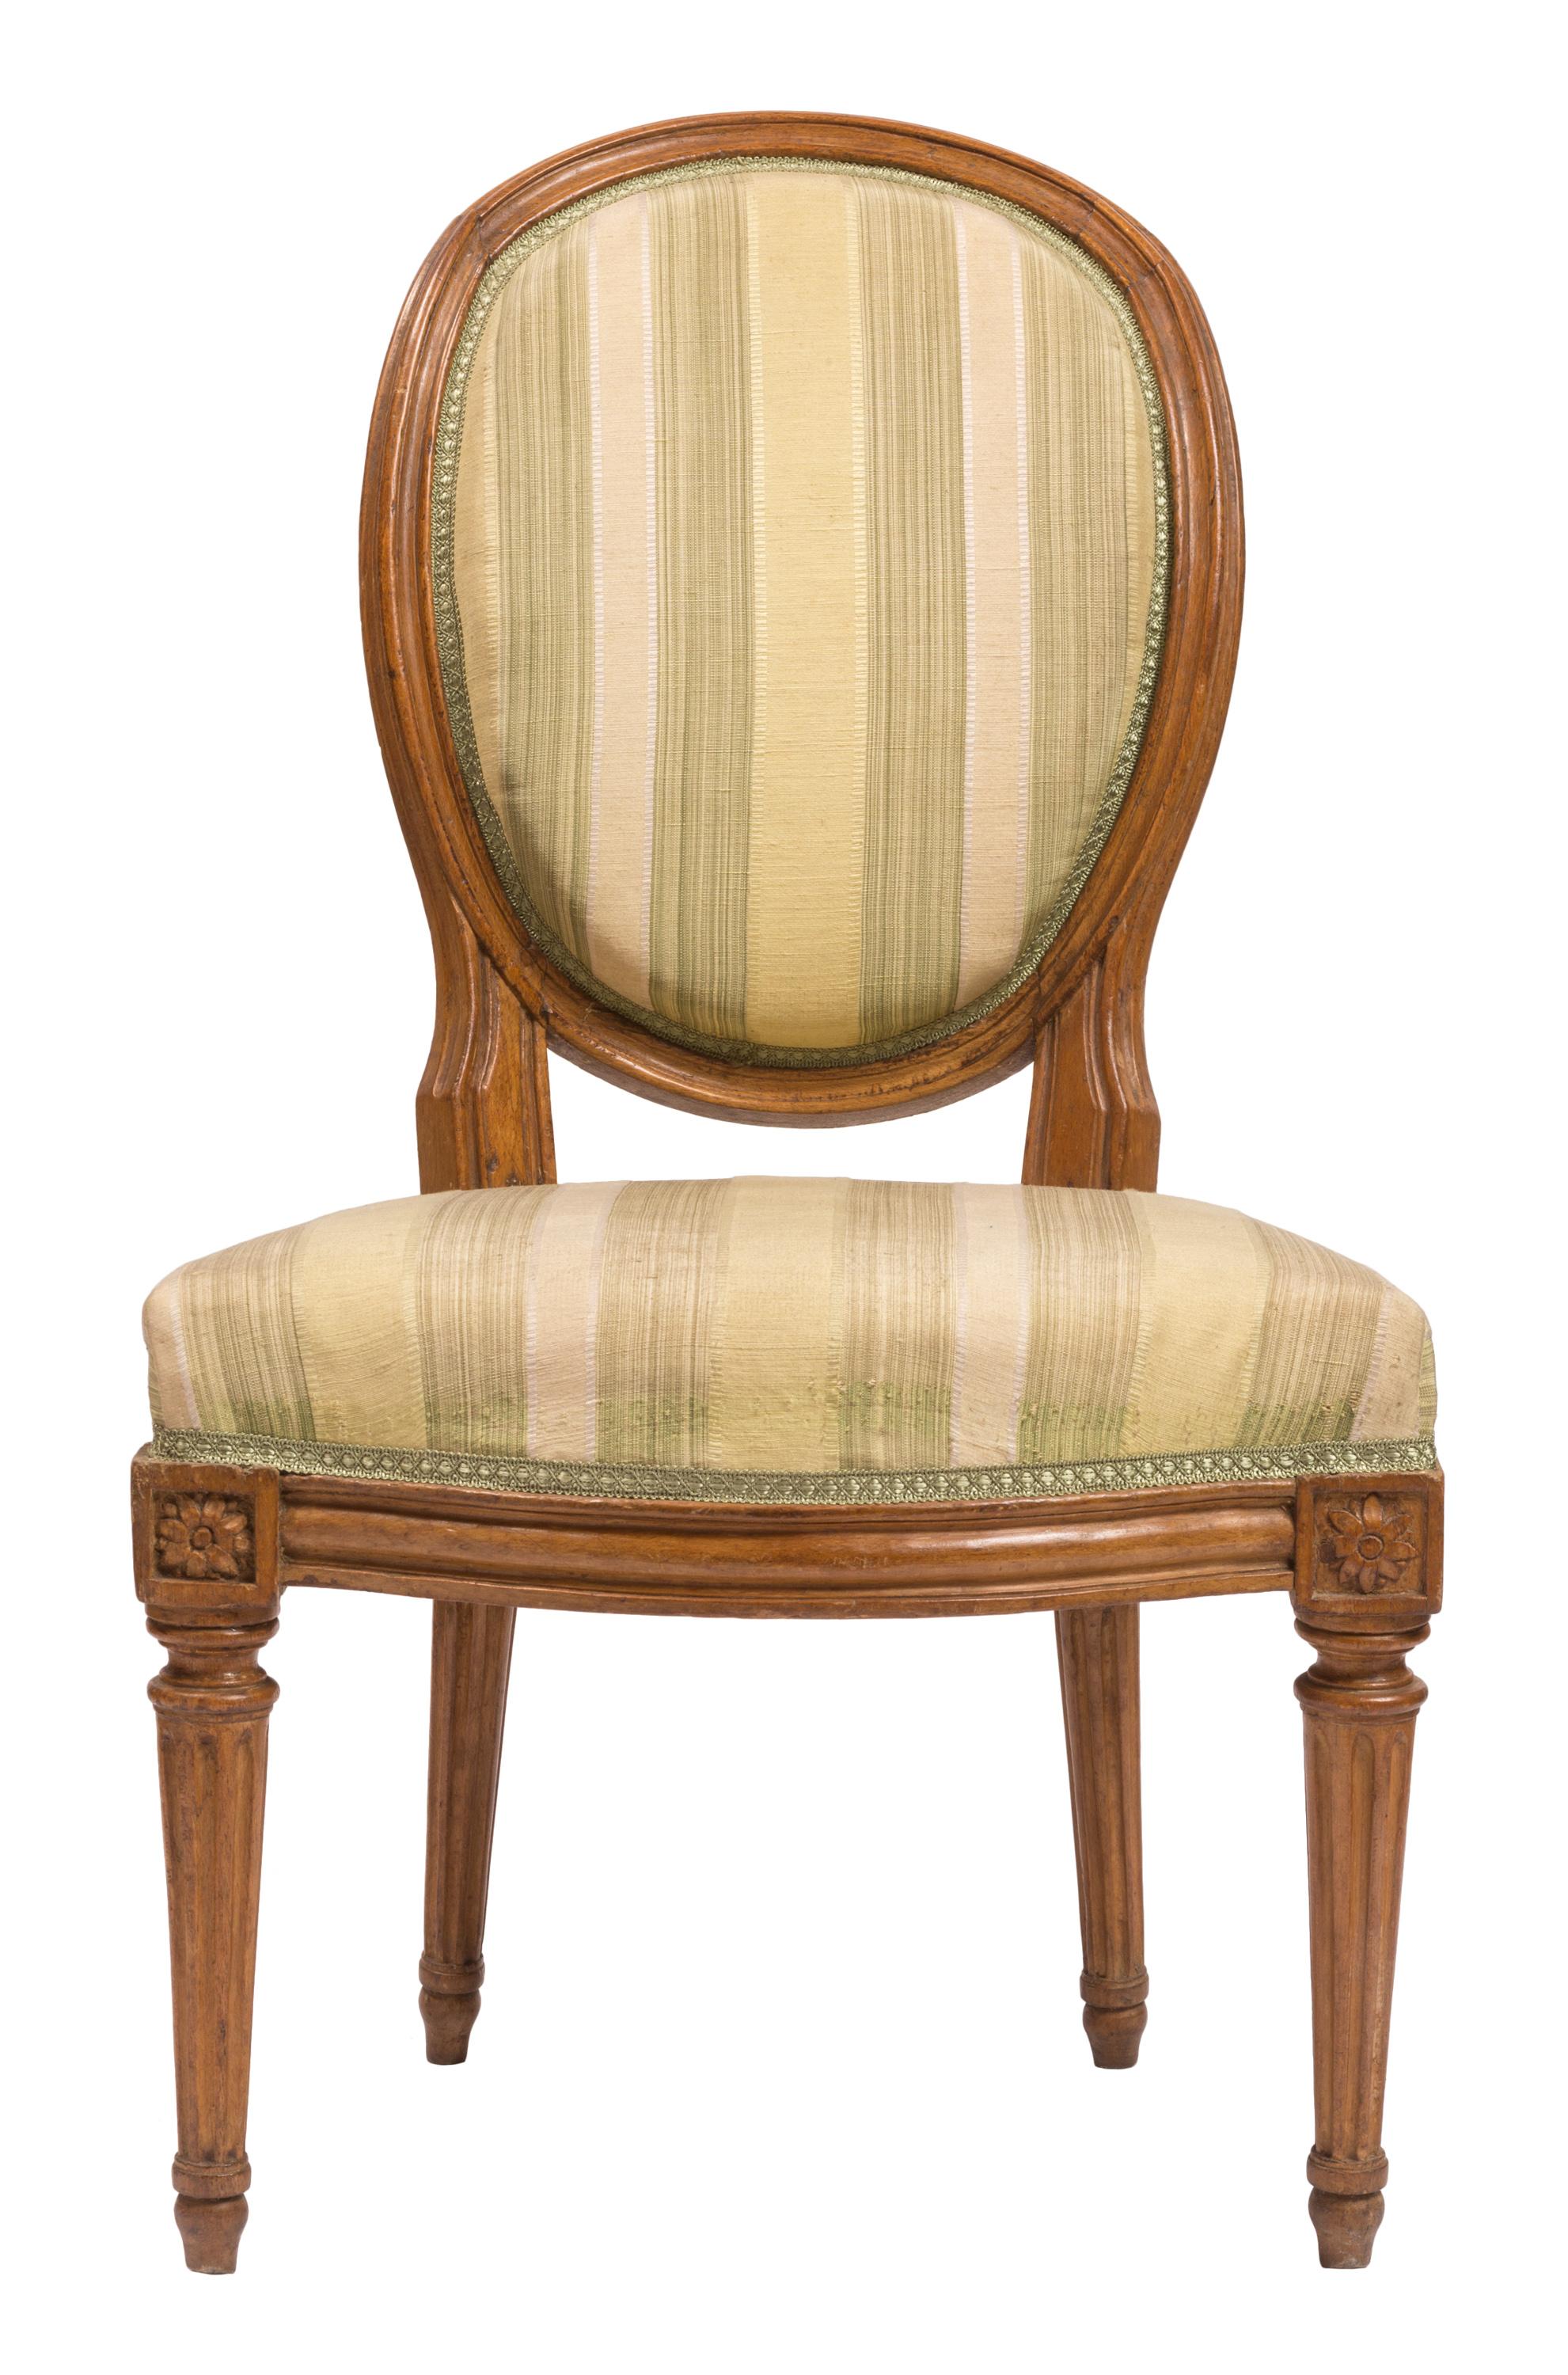 Ein passender Satz von Ess- oder Beistellstühlen im Louis-XVI-Stil des 19. Jahrhunderts mit Möbeln aus Nussbaumholz, schön geschnitzten Blumenrosetten und neuen cremefarbenen und hellgrünen gestreiften Seidenbezügen. Die klassische Stuhlsilhouette